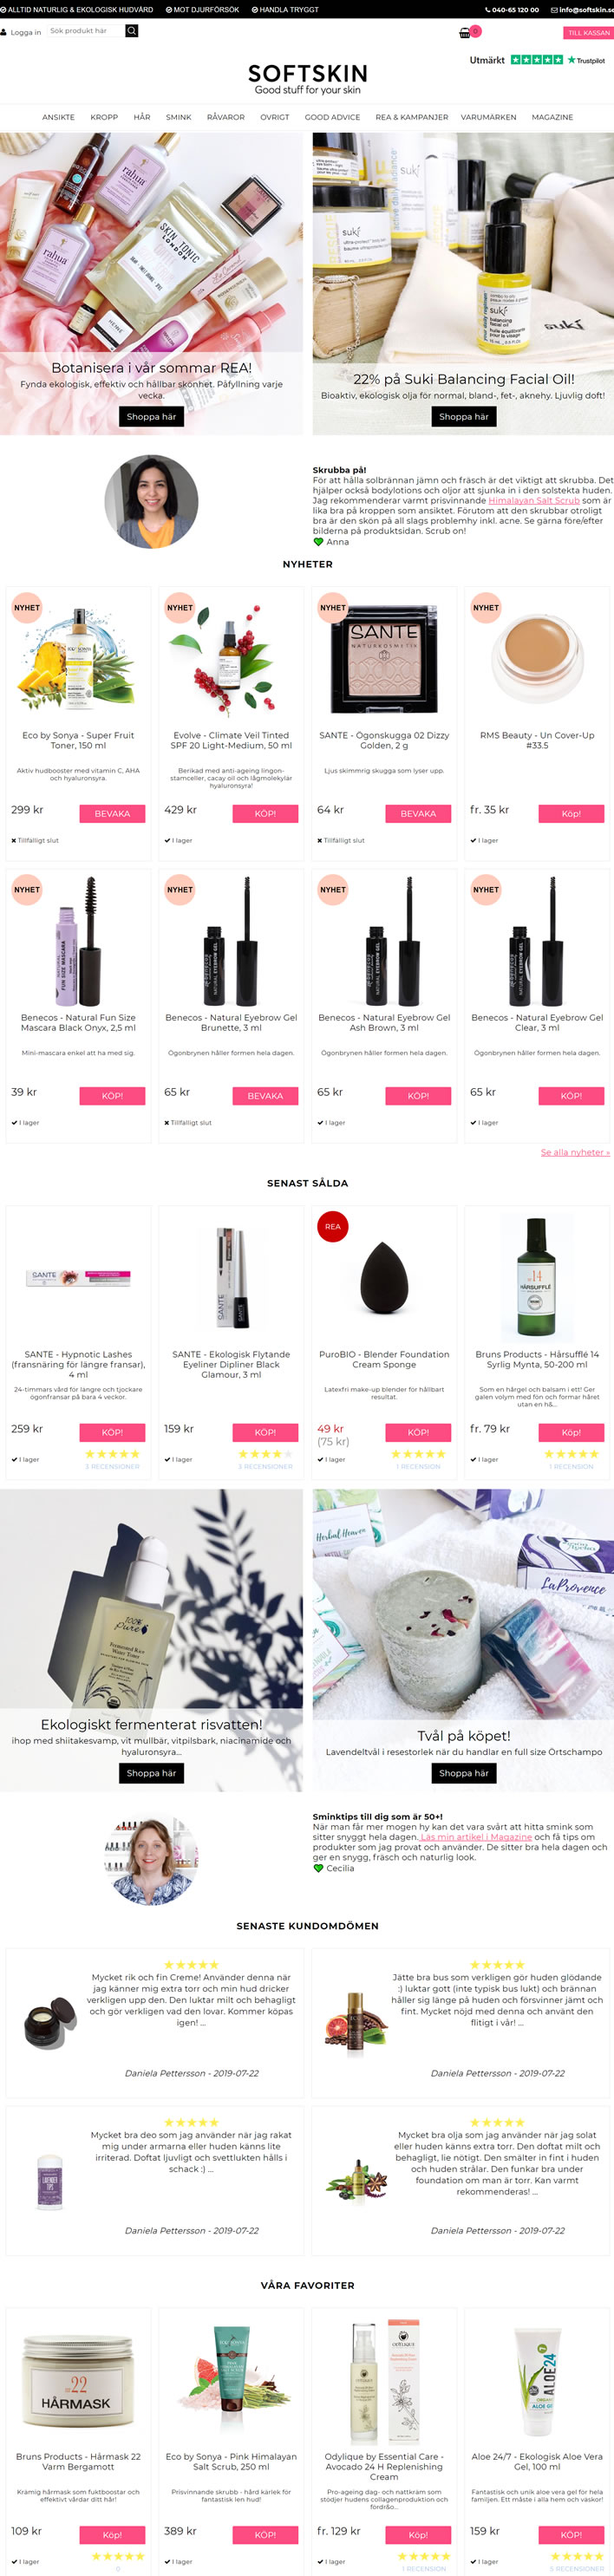 瑞典有机护肤、护发和化妆购物网站：Softskin